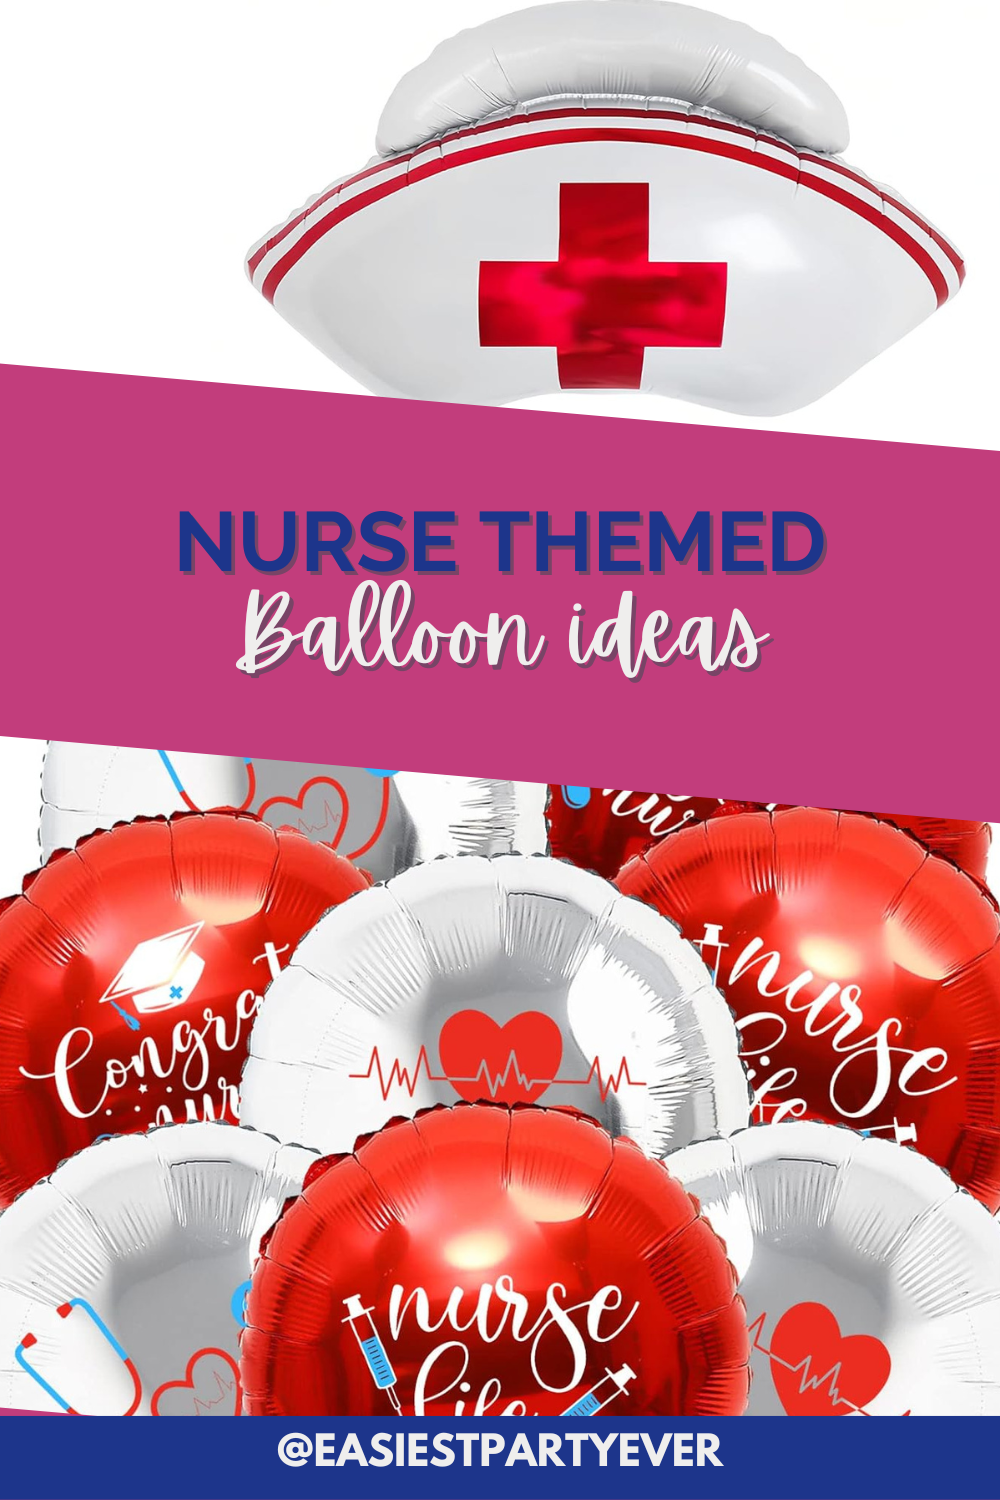 The best nurse balloon ideas